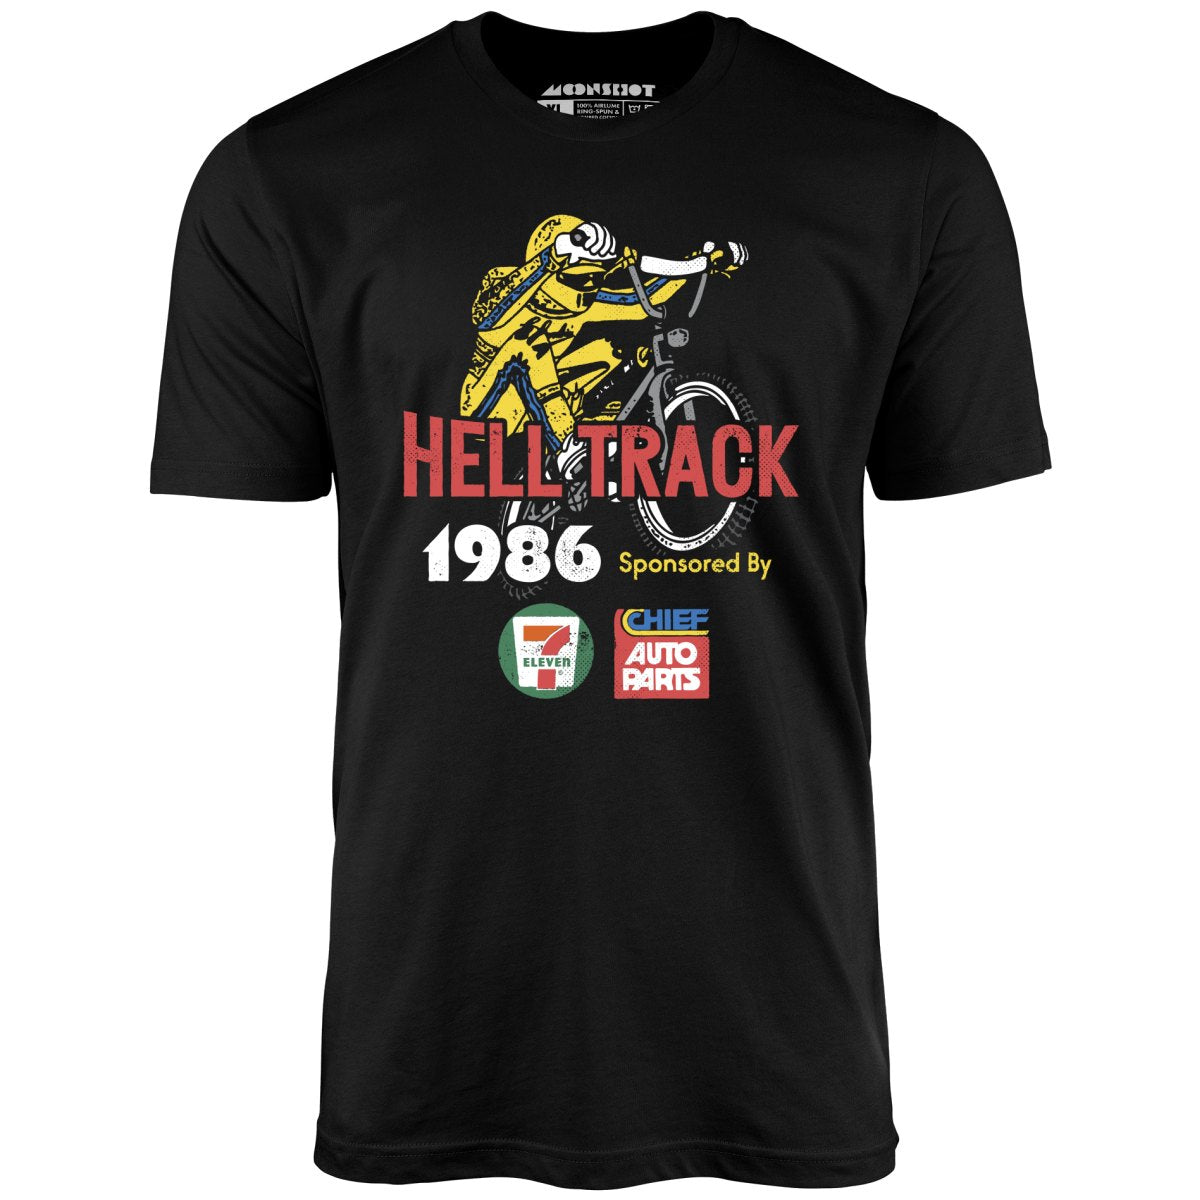 Helltrack - Unisex T-Shirt